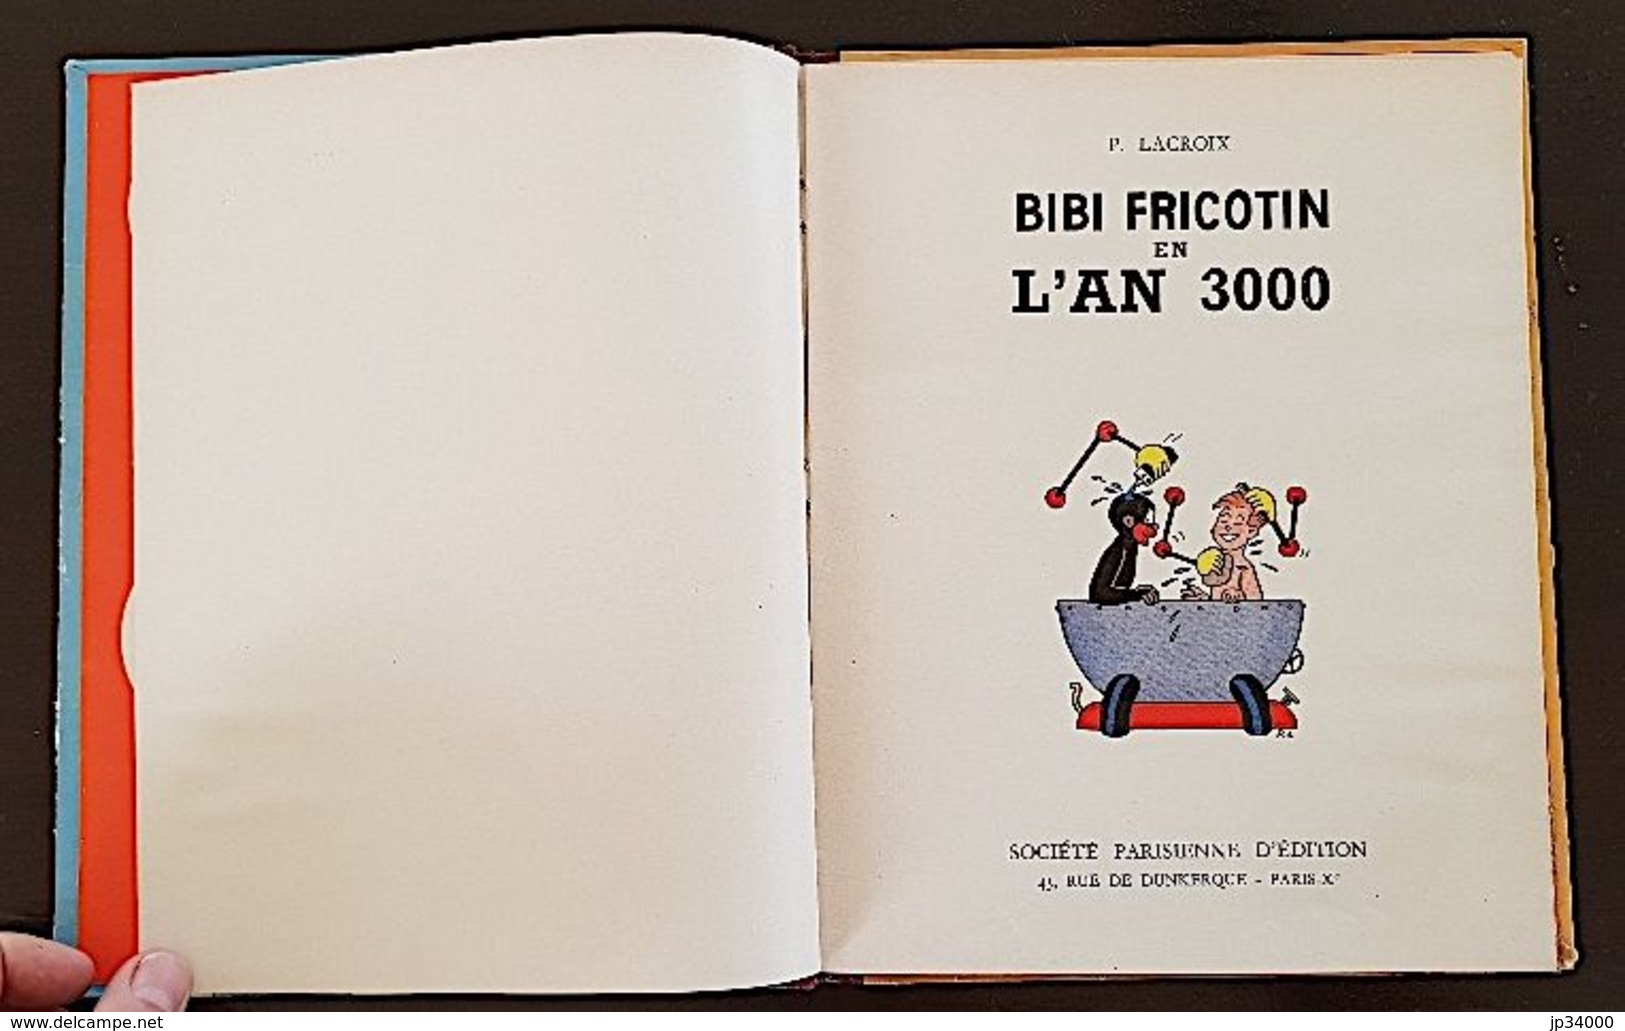 BIBI FRICOTIN EN L'AN 3000 par LACROIX. Edition cartonnée en bel état (1955-58). Grand Format  (Frais de port inclus)